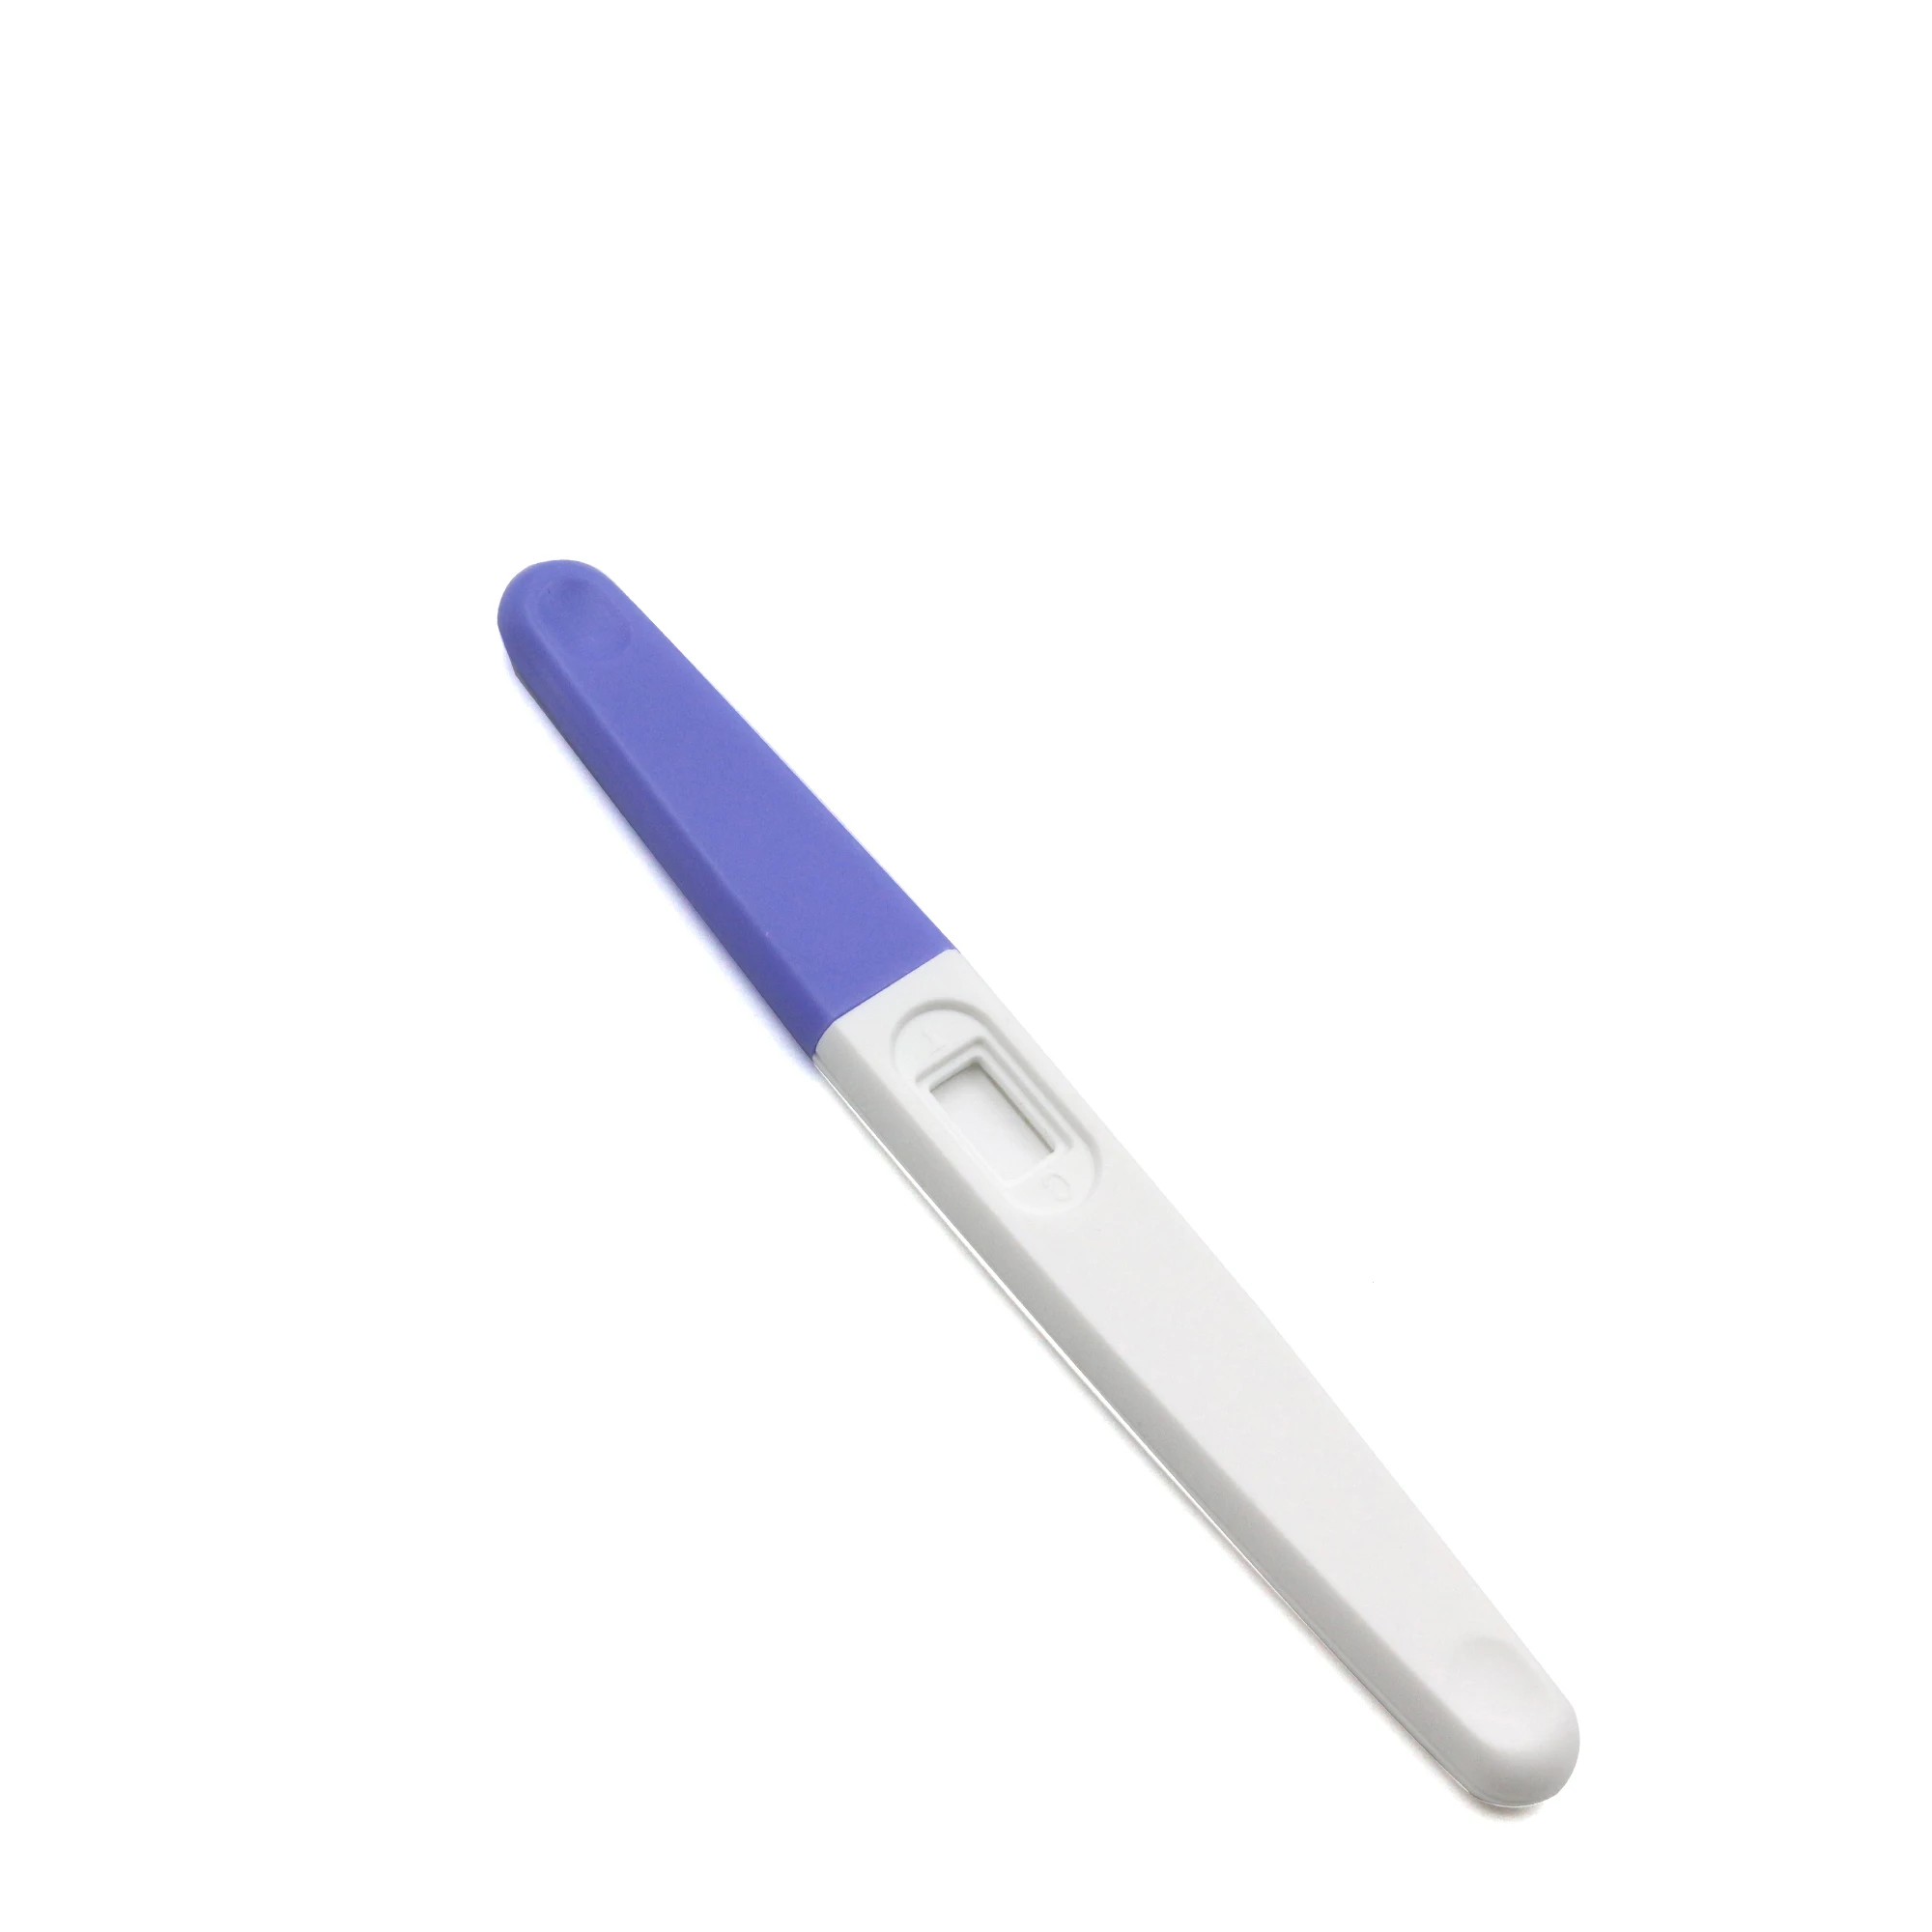 Home Blood Recare Pregnancy Test Kit - Buy Recare Pregnancy Test ...